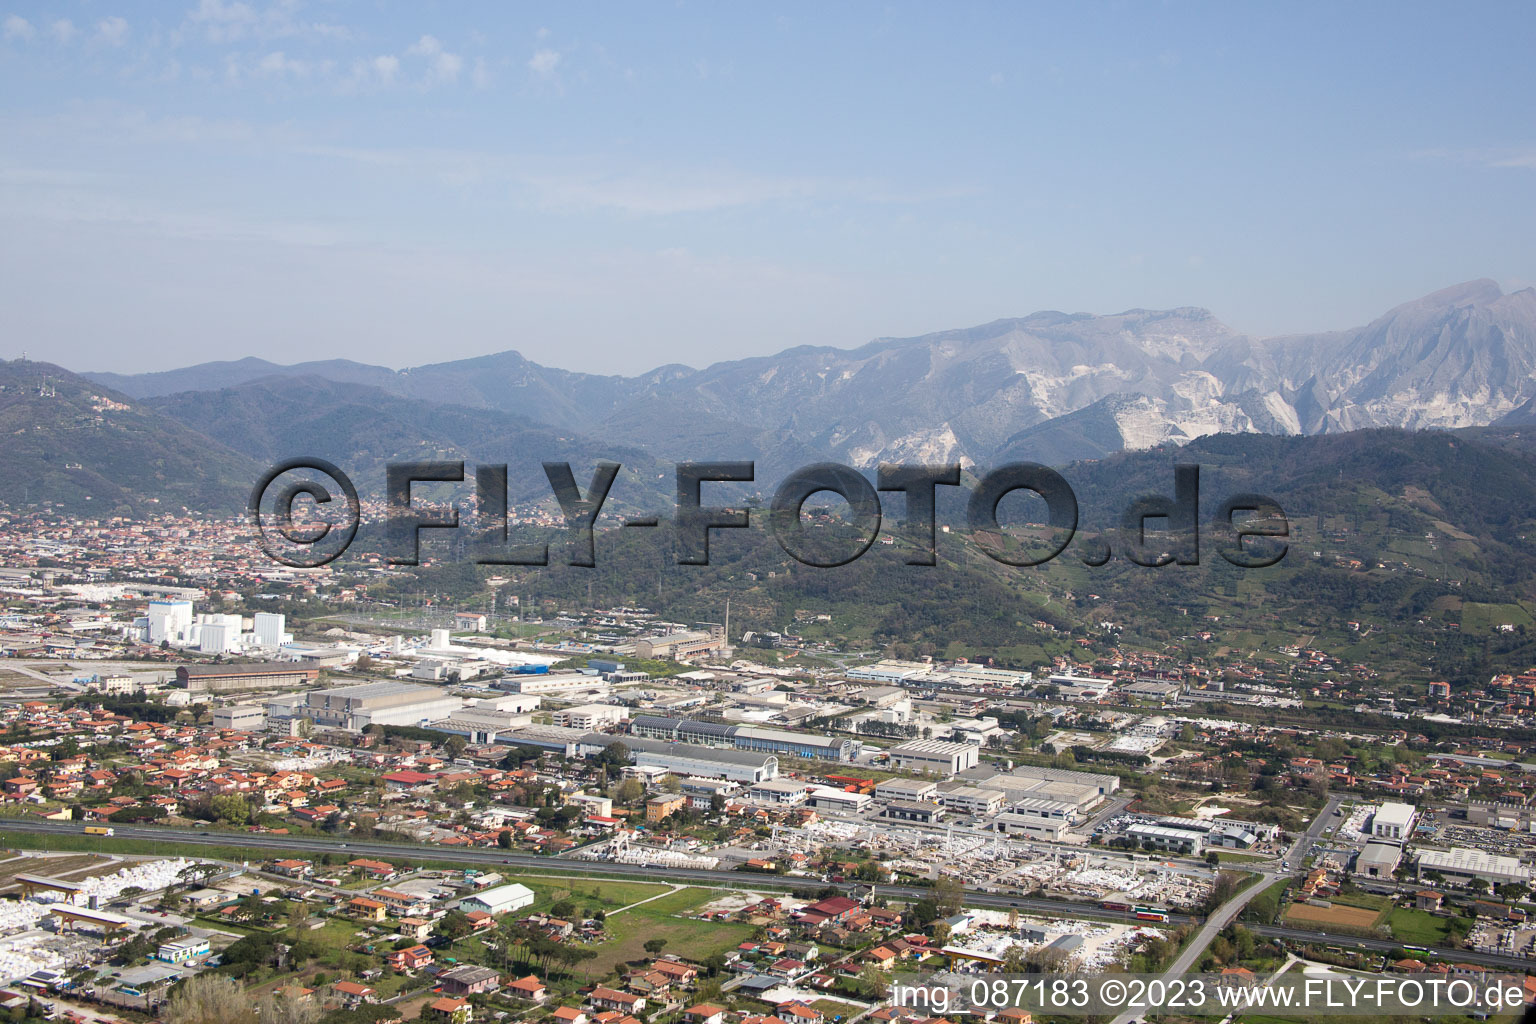 Photographie aérienne de Avenza dans le département Toscane, Italie